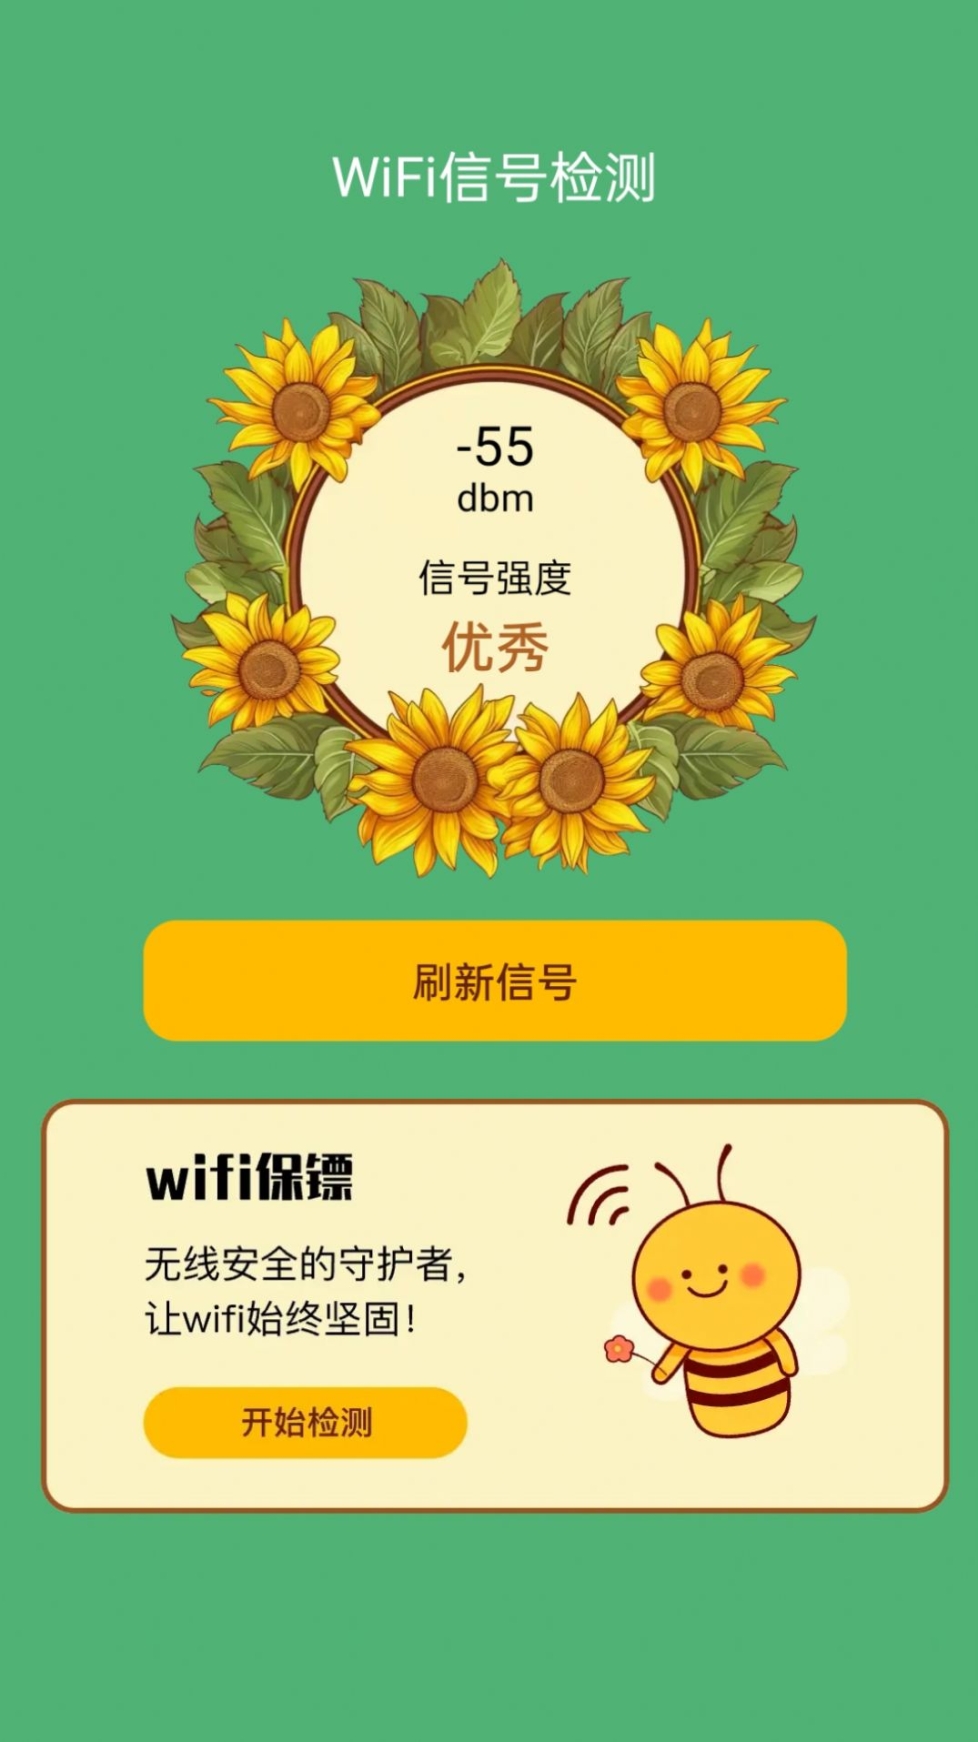 荷娱蜜蜂WiFi app安卓版截图1